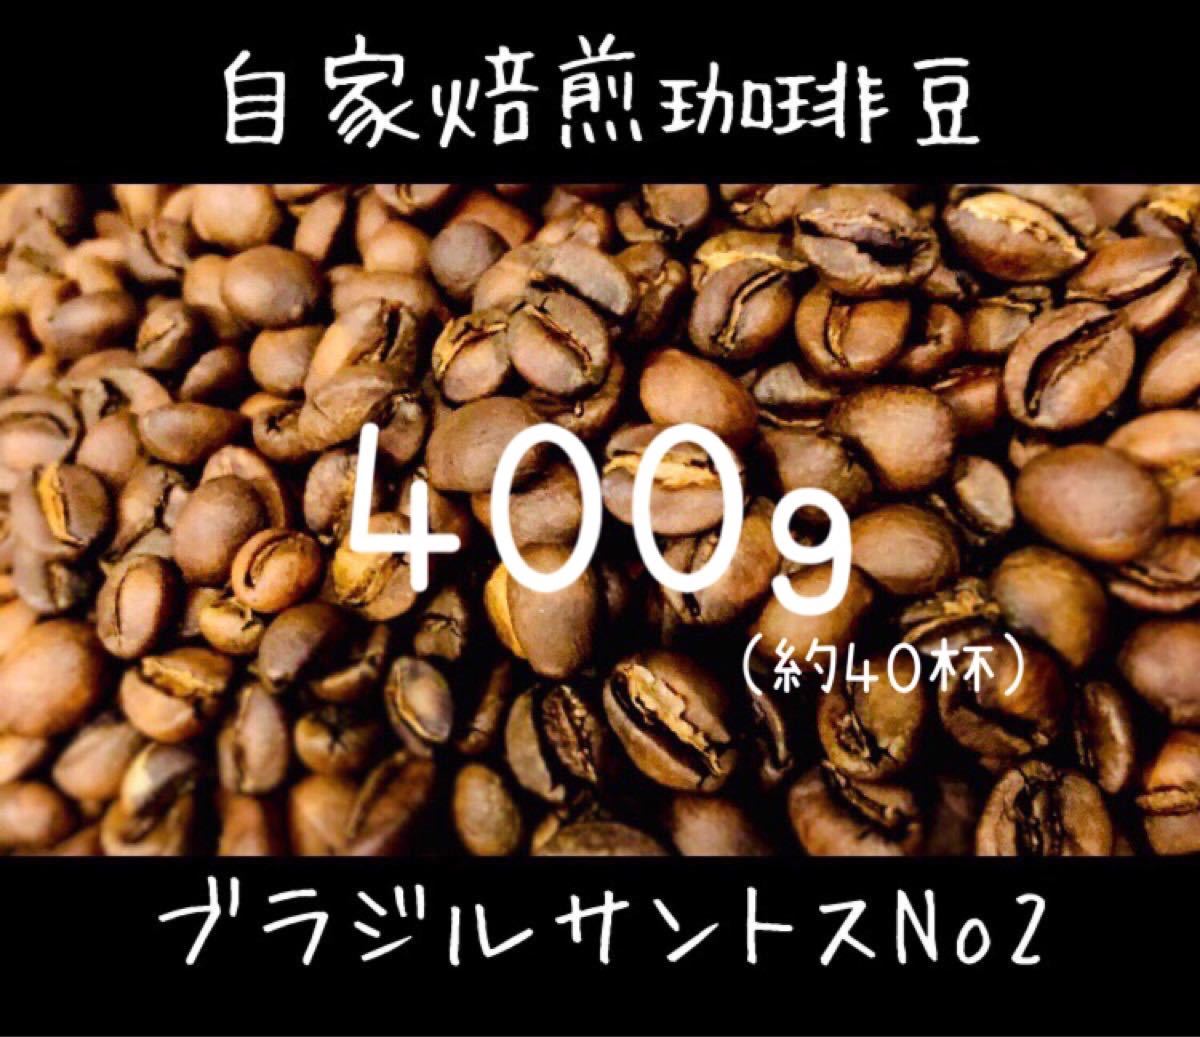 自家焙煎 ブラジルサントスNo2 珈琲豆 コーヒー豆 【豆or粉】400g